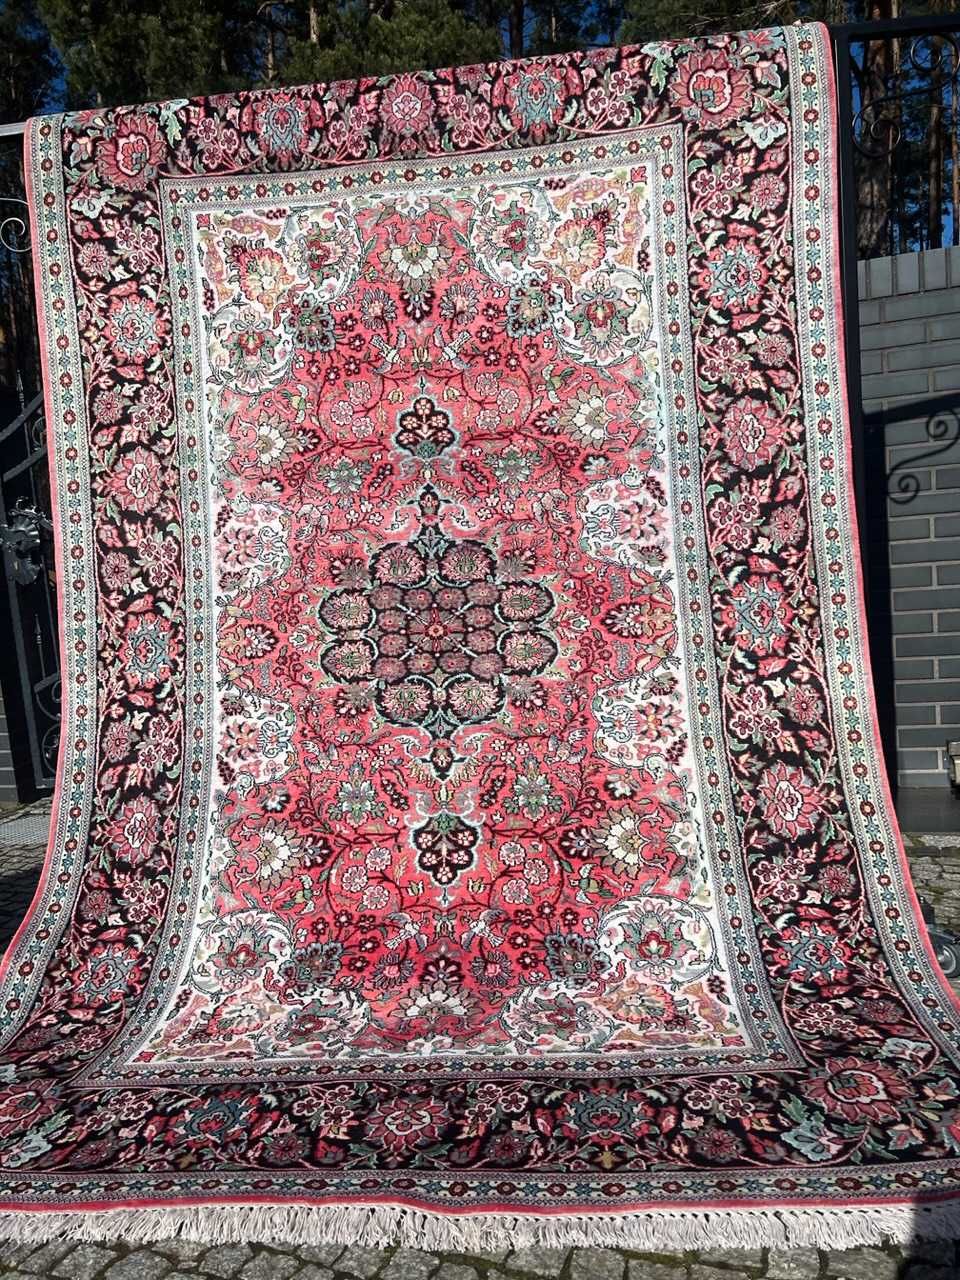 Nowy dywan perski jedwabny Ghoum 275x180 galeria 30 tys